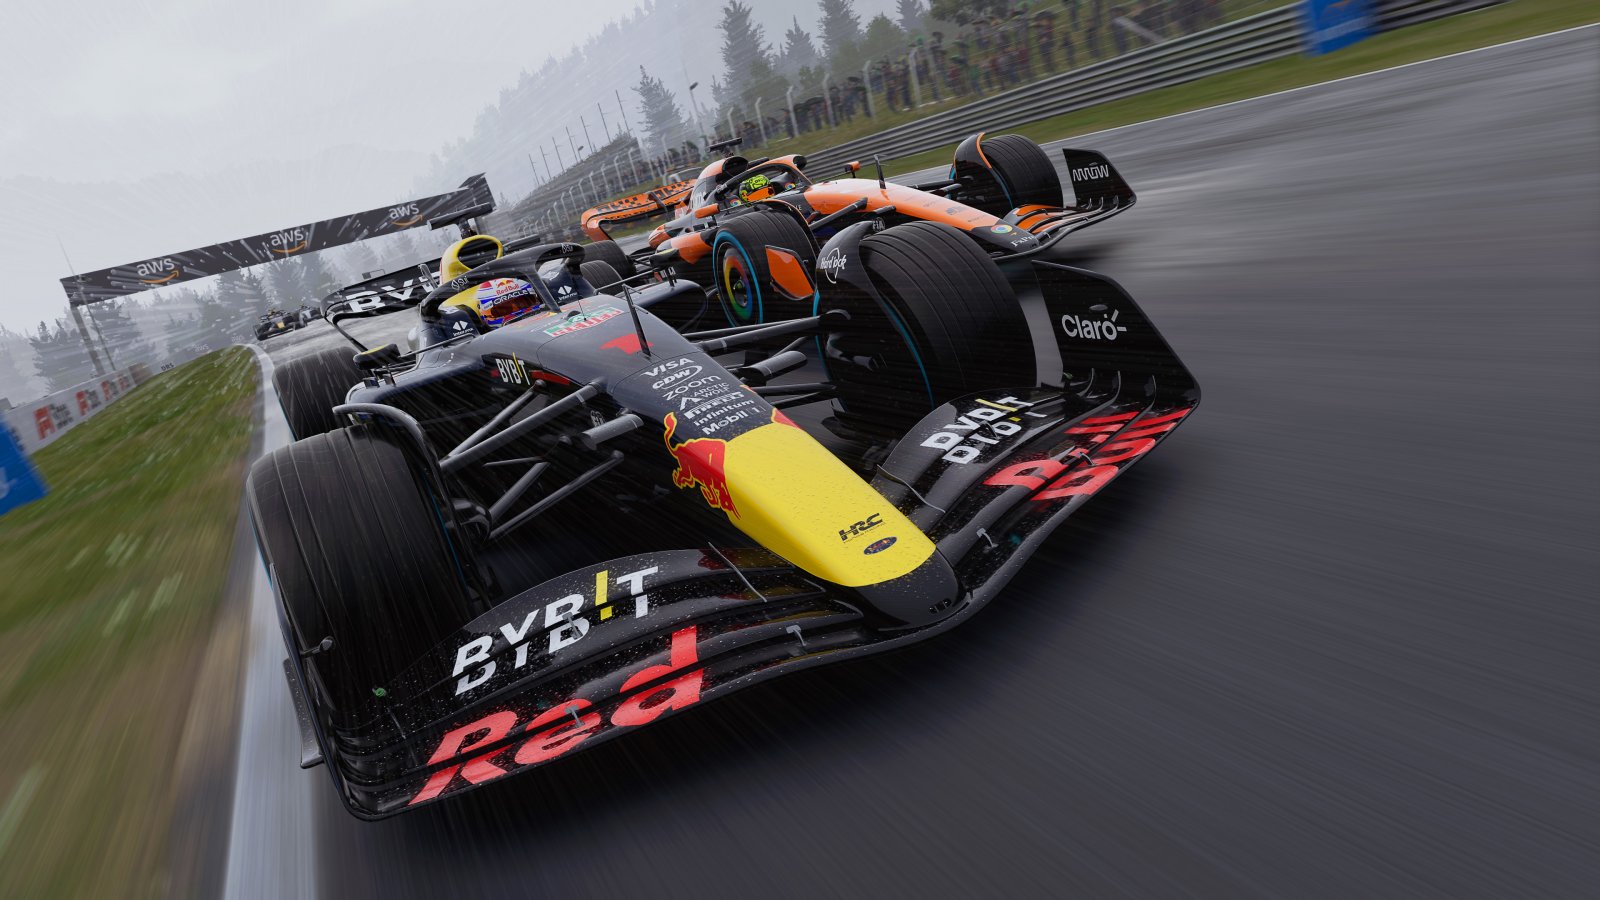 F1 24: primo video di gameplay fa osservare i nuovi circuiti, le nuove auto e il realismo raggiunto